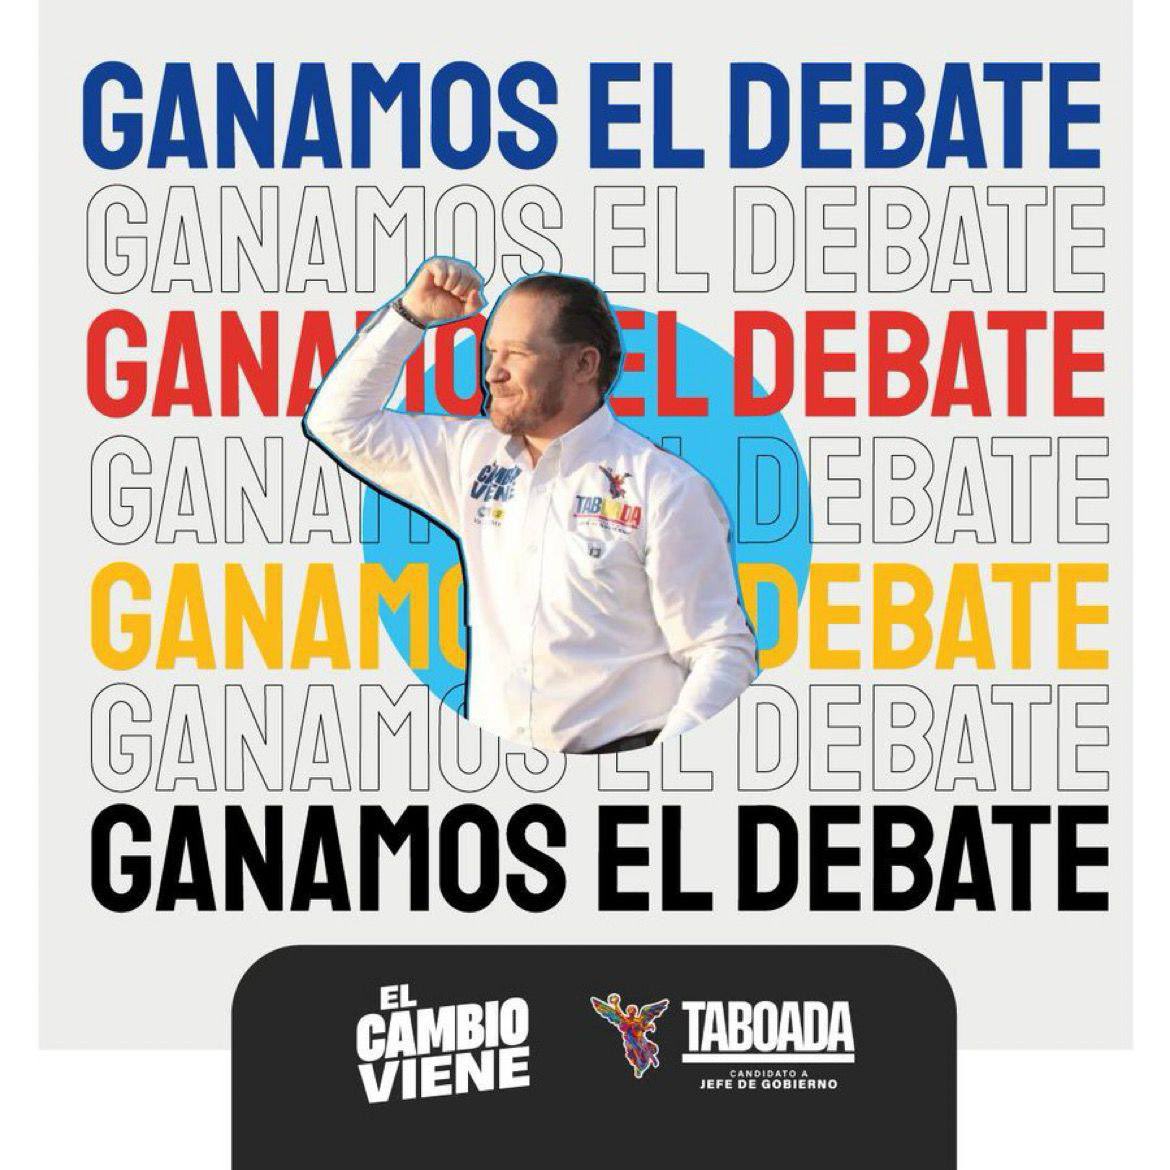 ¡#GanóElCambio en el #DebateChilango y vamos a ganar en la #CDMX! 👏 @STaboadaMx será el próximo Jefe de Gobierno. #ElCambioViene para las y los chilangos este 2 de junio. #YoConTaboada